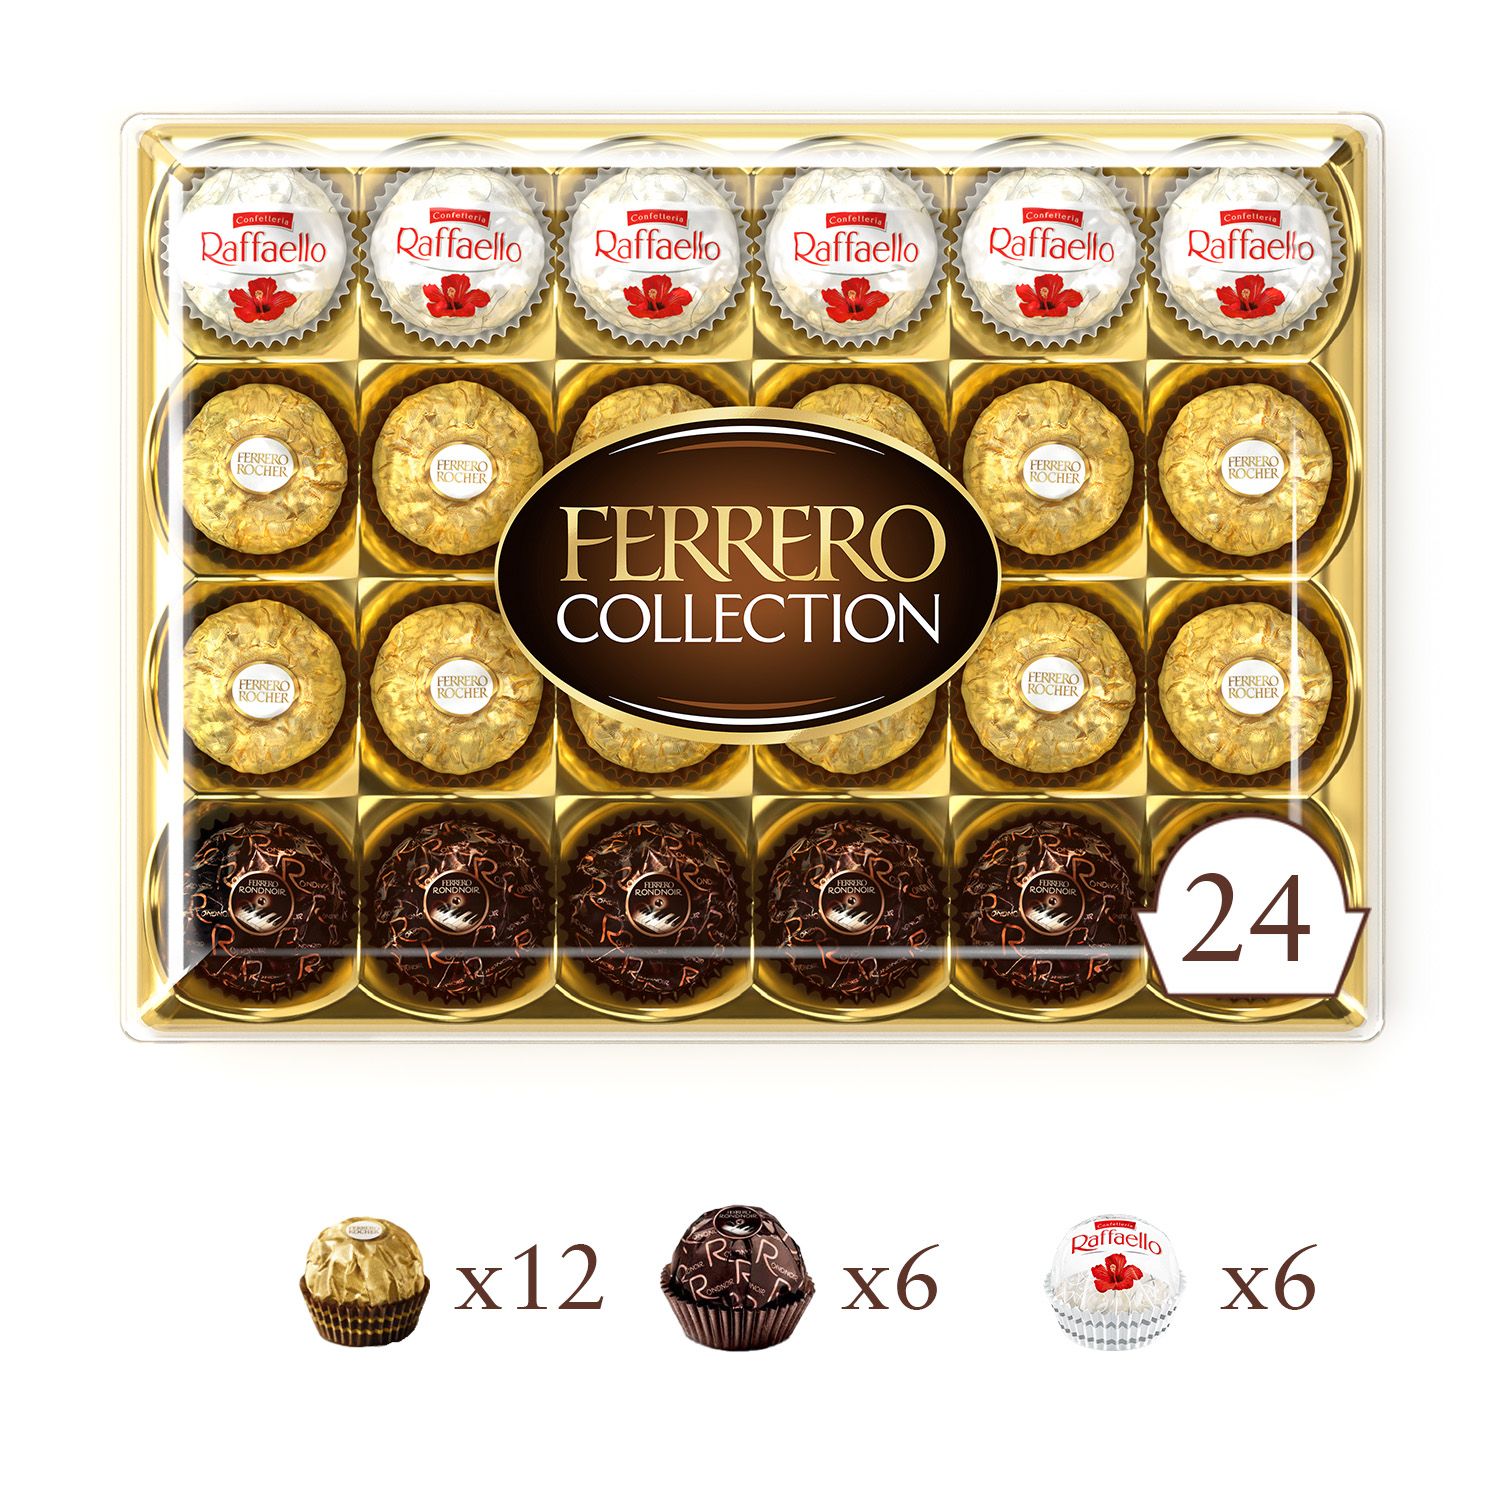 FERRERO Collection assortiment de chocolats 24 pièces 269g pas